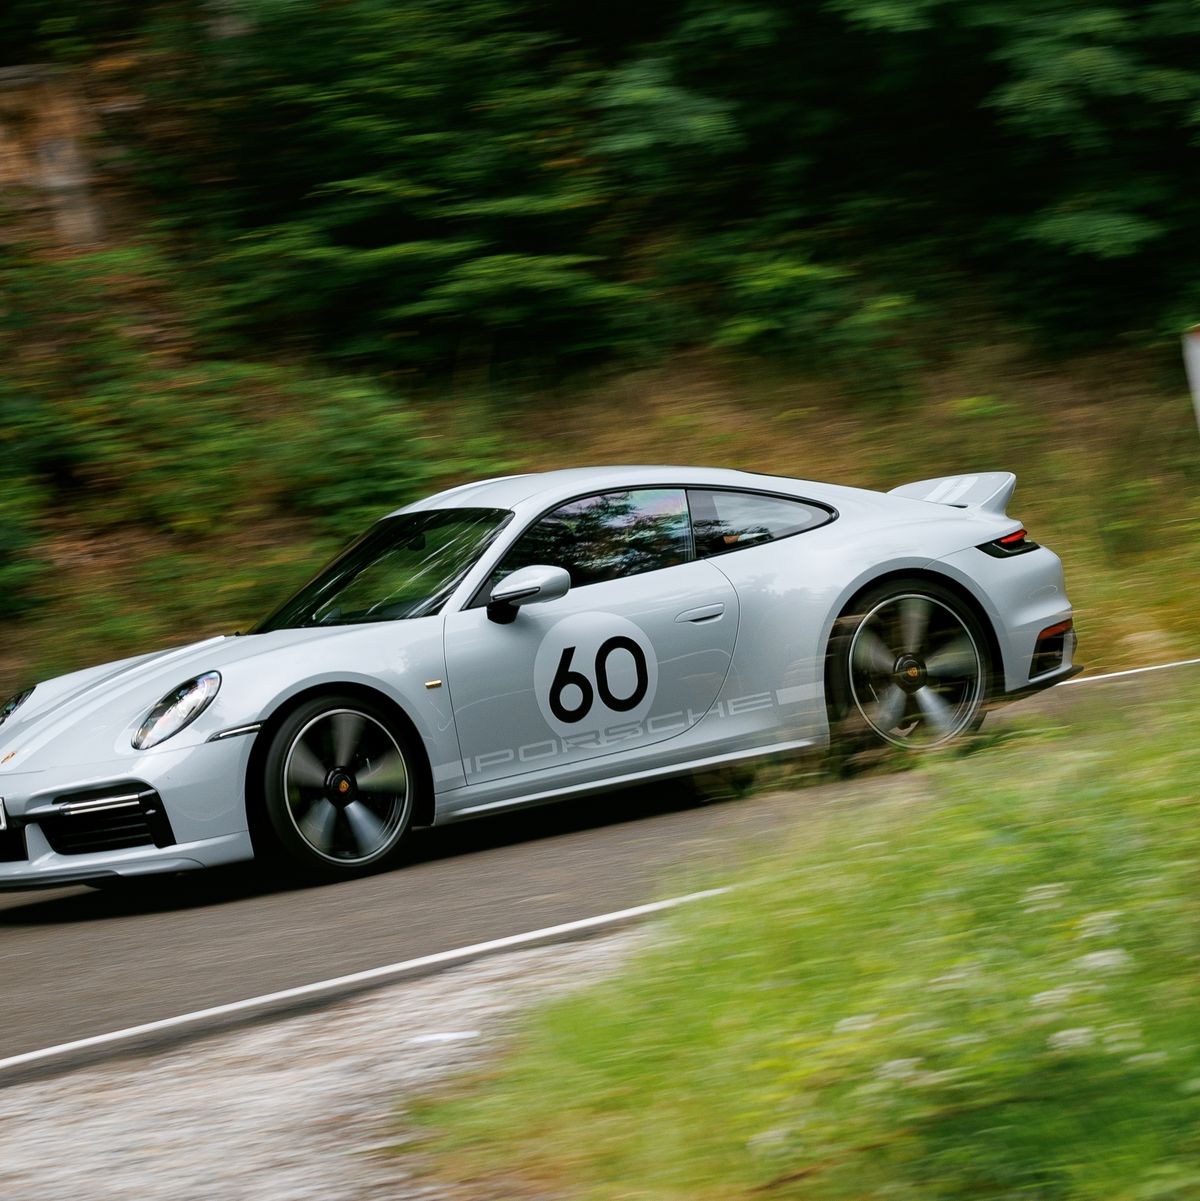 2023 Porsche 911 S/T review: International first drive